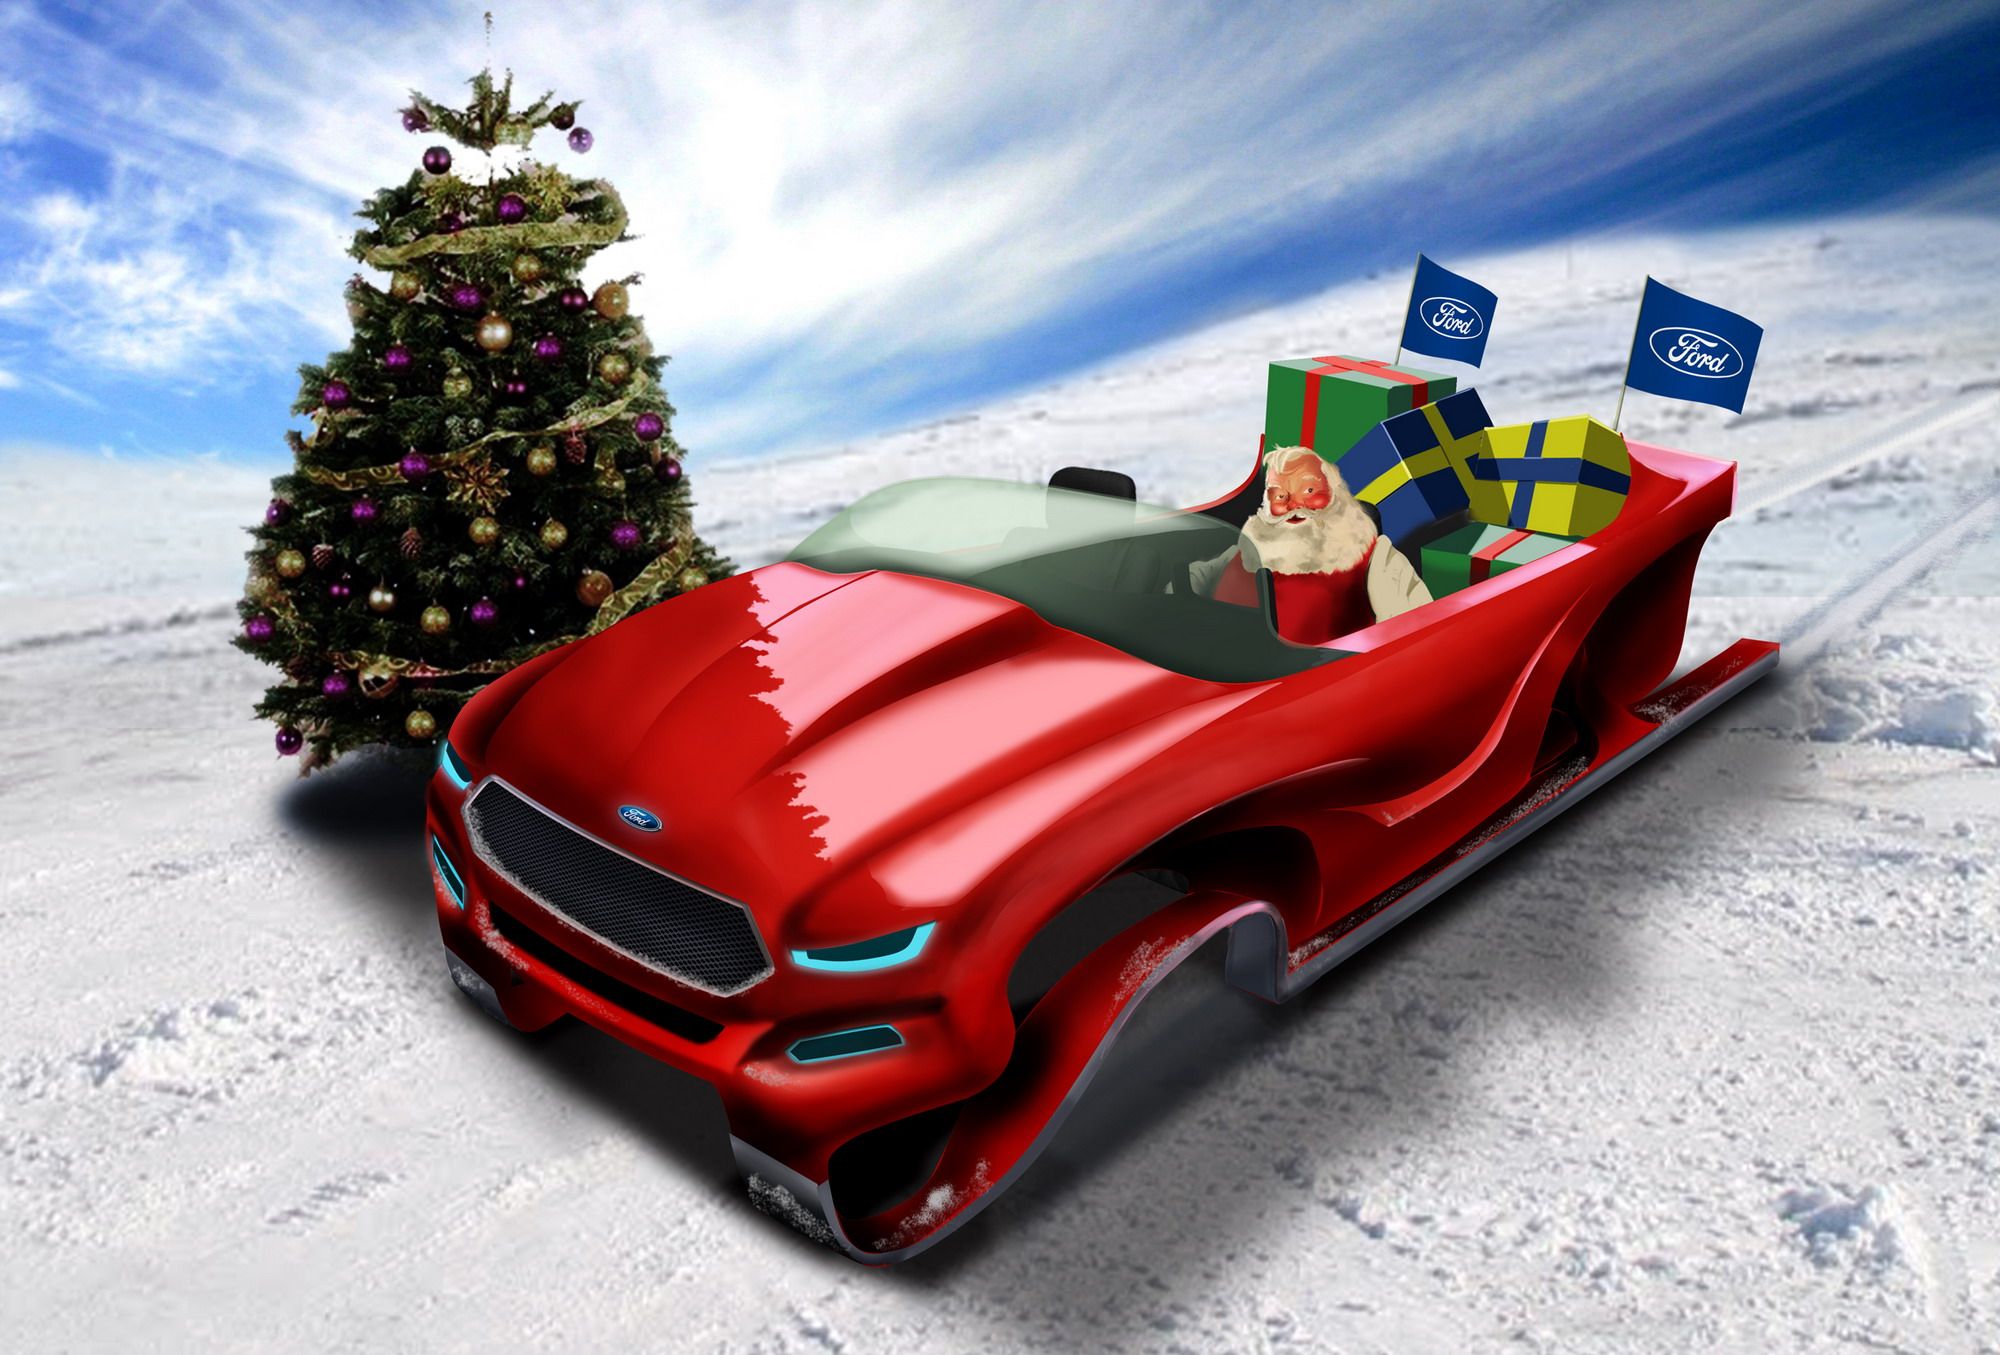 2012 Ford Evos Santa Sleigh Concept